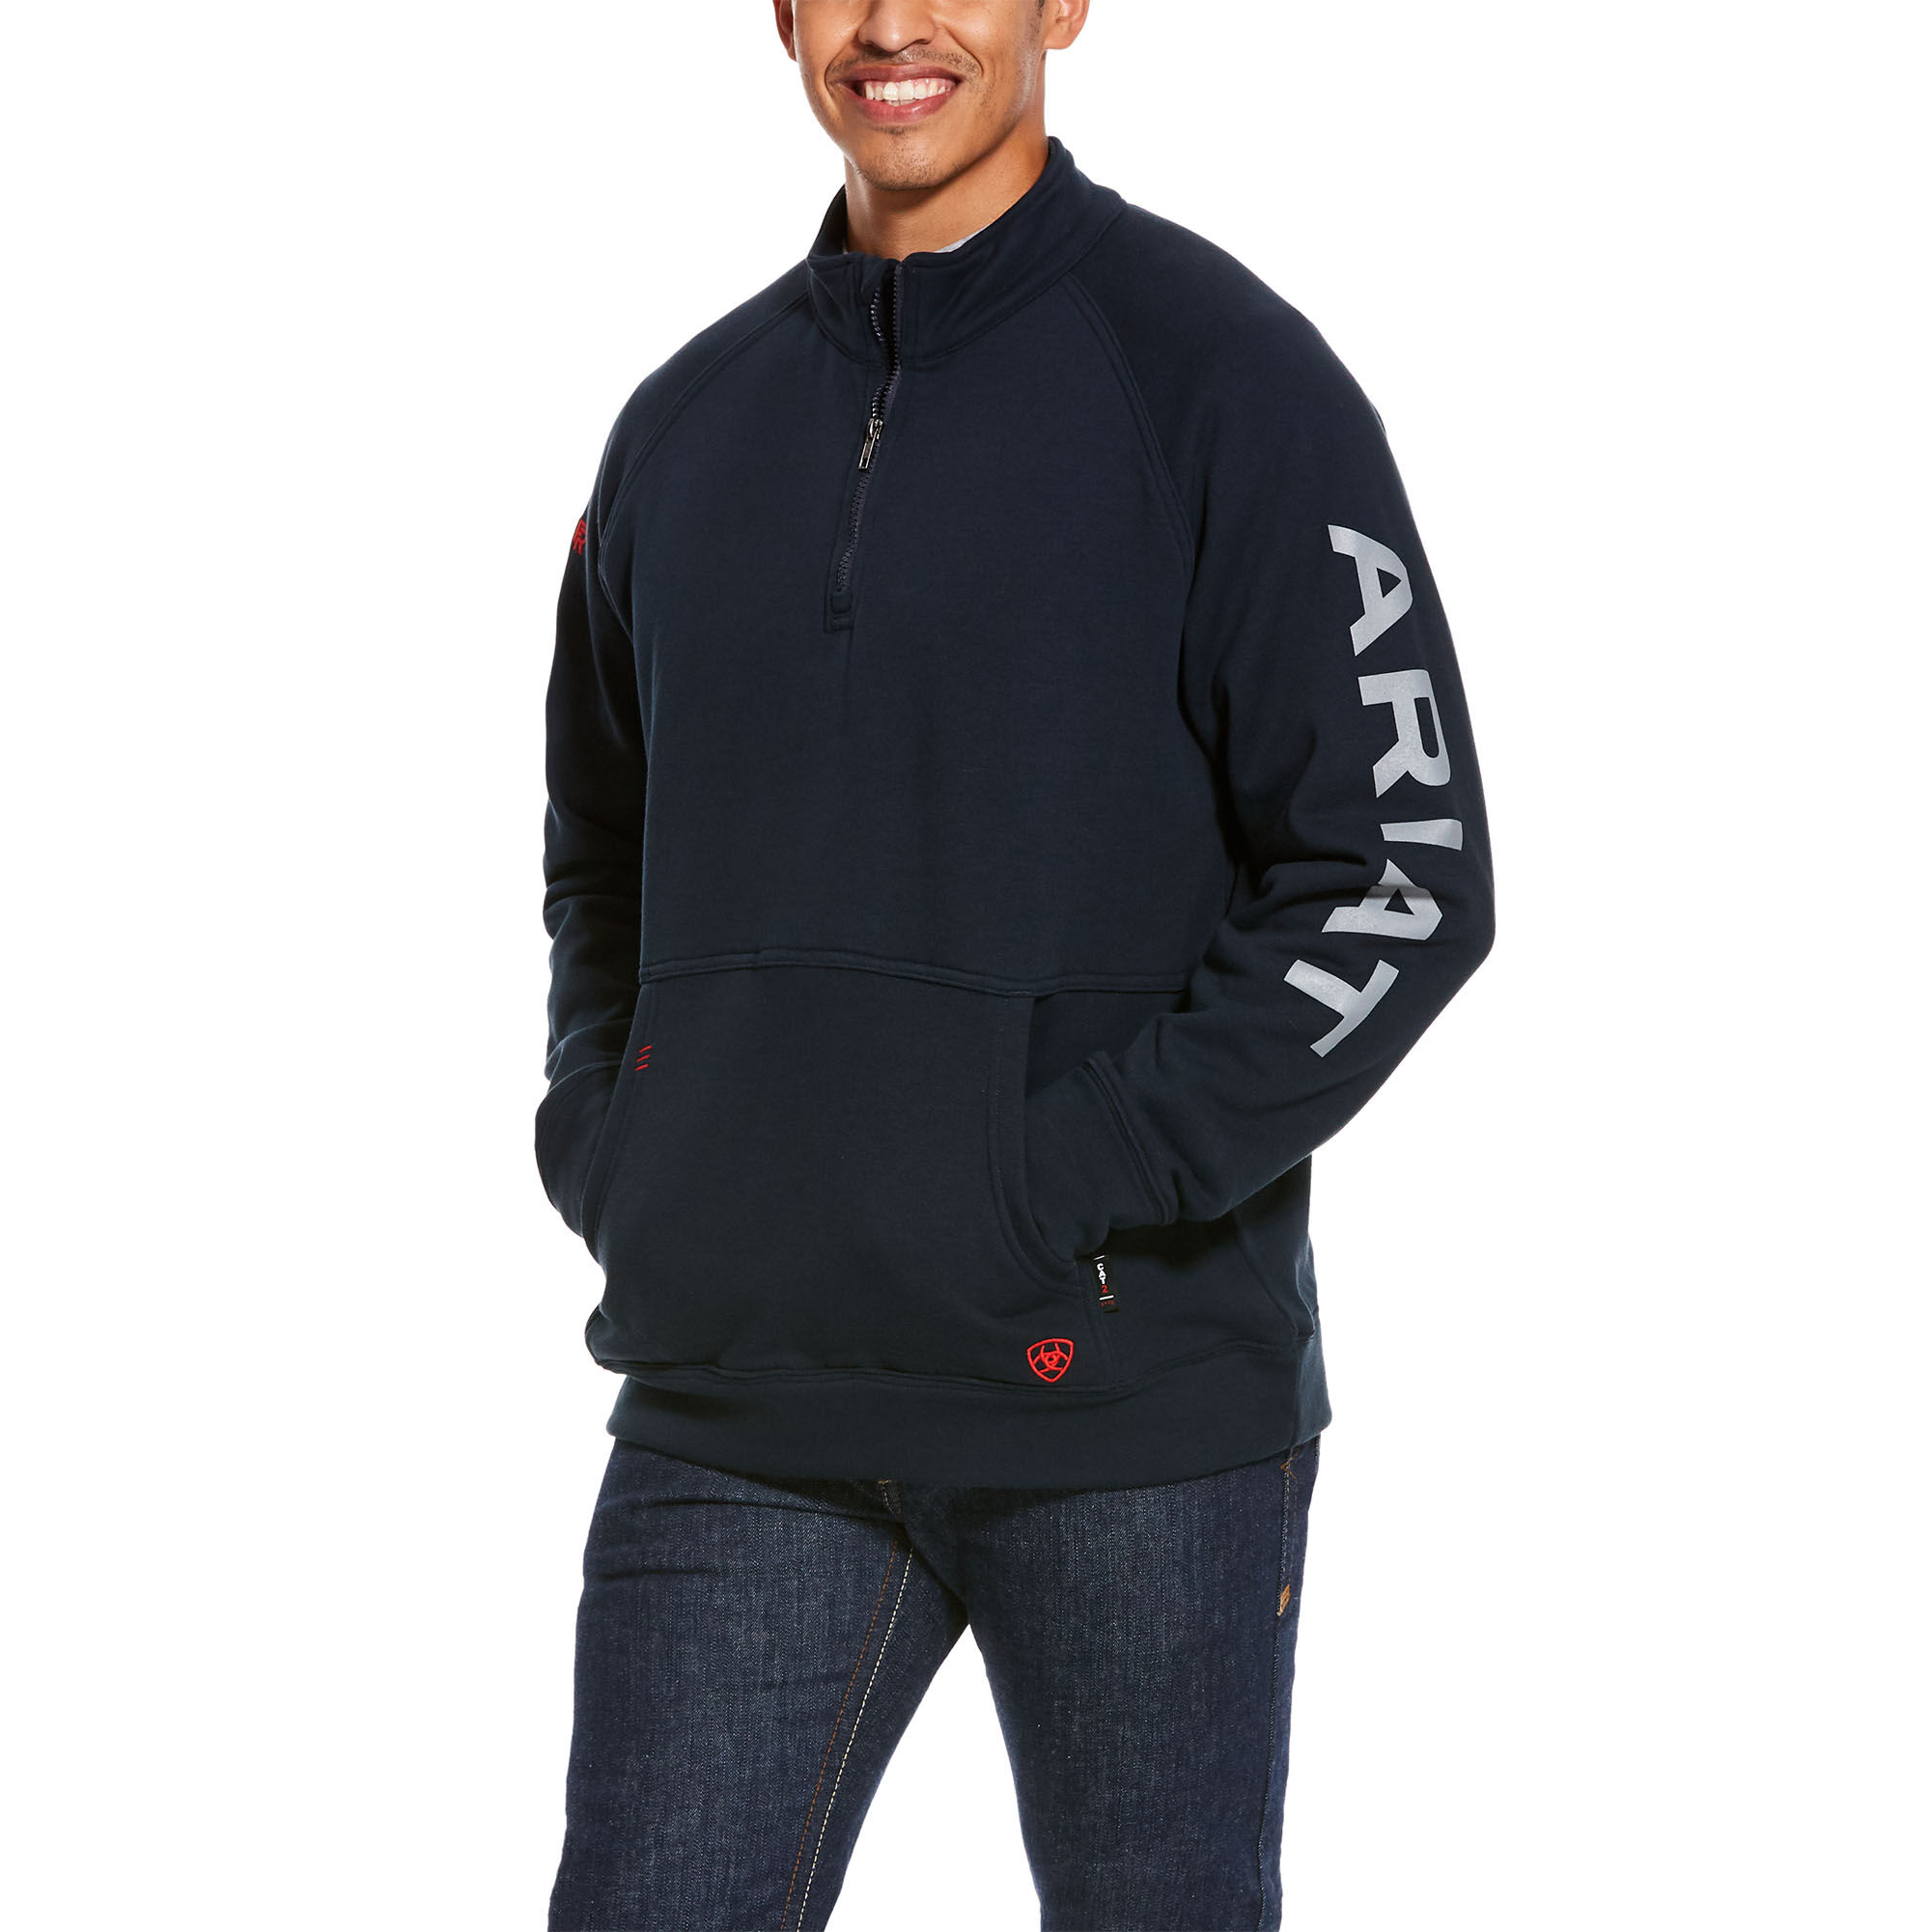 Men's Flame-Resistant Primo Fleece Logo 1/4 Zip Sweater in